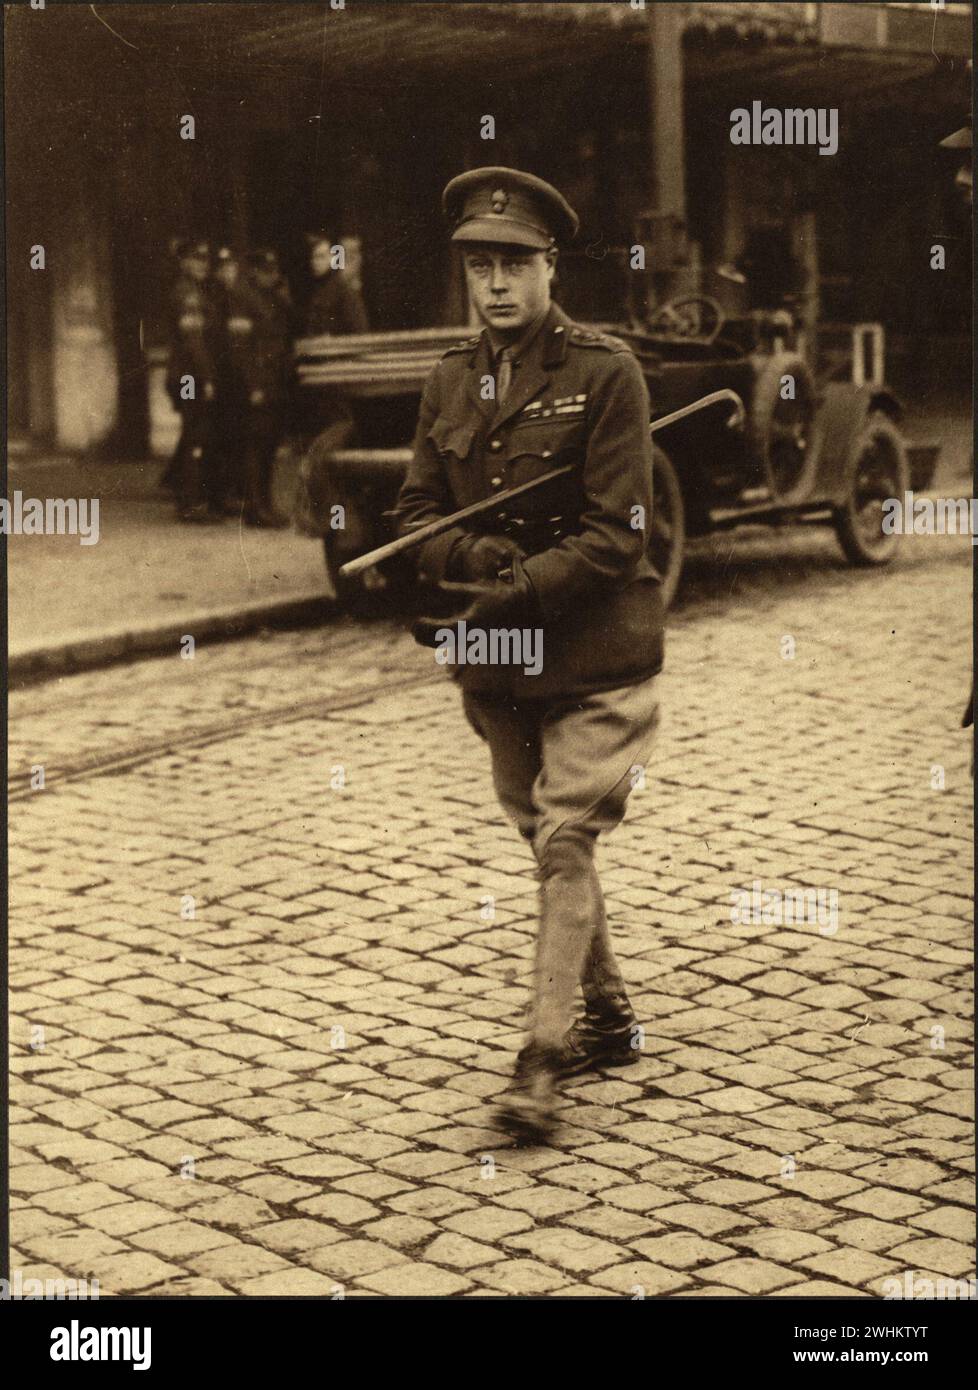 Sua altezza reale il Principe di Galles fa una passeggiata a Mons in visita alle truppe canadesi. Immagini delle forze canadesi nella prima guerra mondiale Francia 1918 Foto Stock